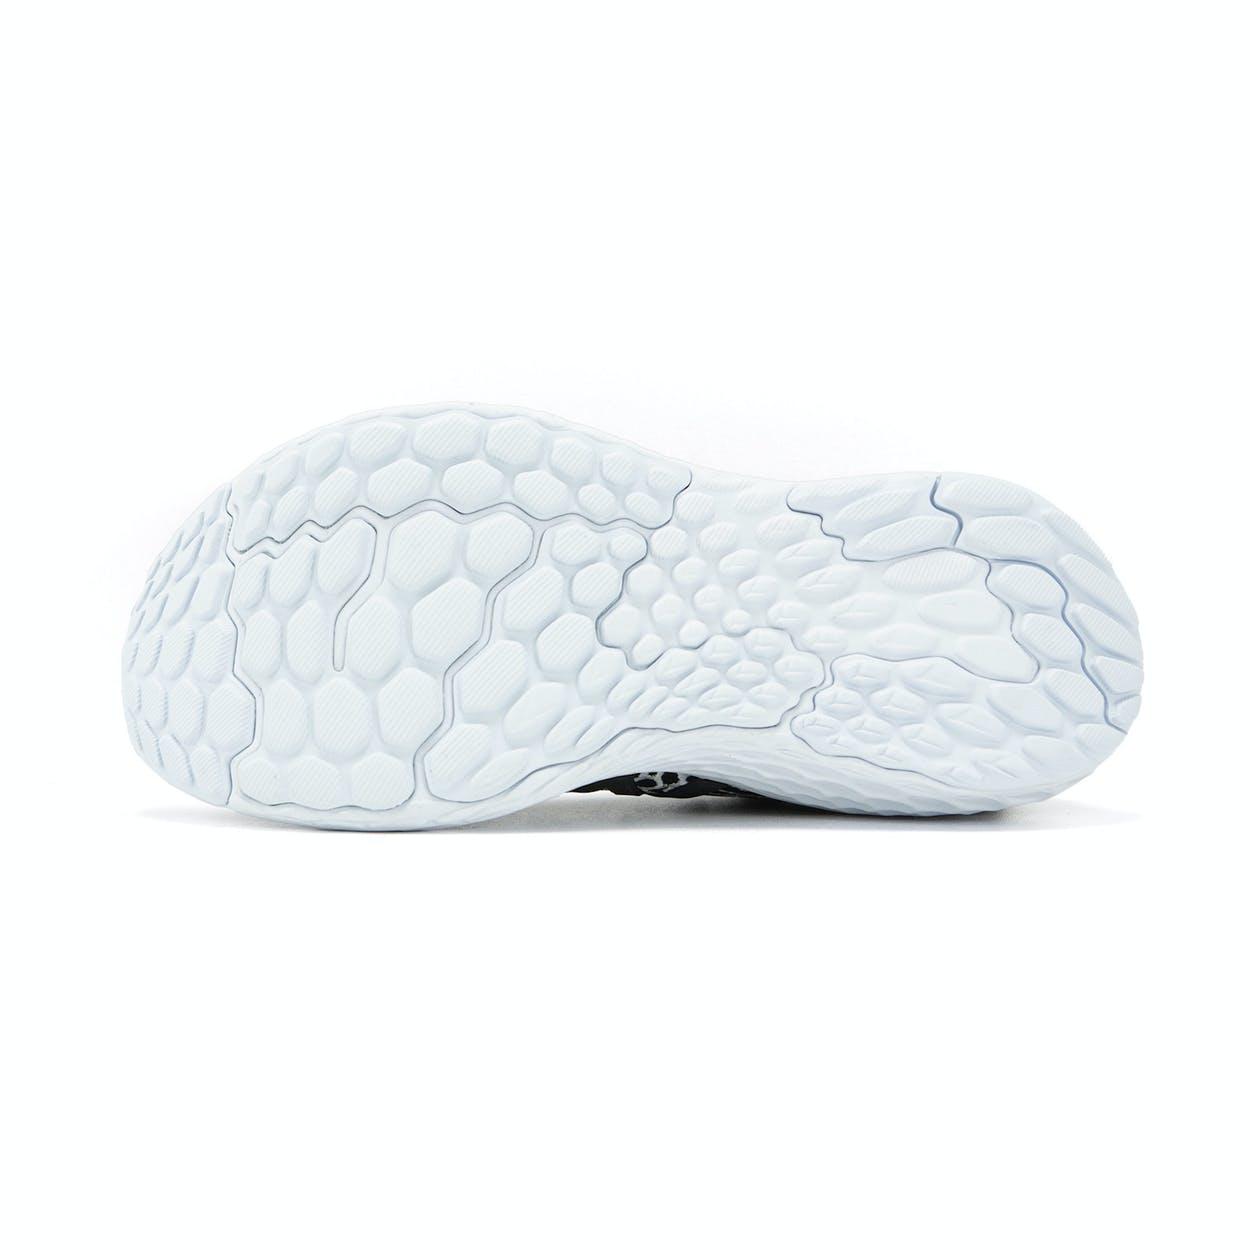 “New Balance Fresh Foam 1080v10” รองเท้าวิ่งที่มีความหนานุ่มสวมใส่สบายเท้าสุด ๆ 04